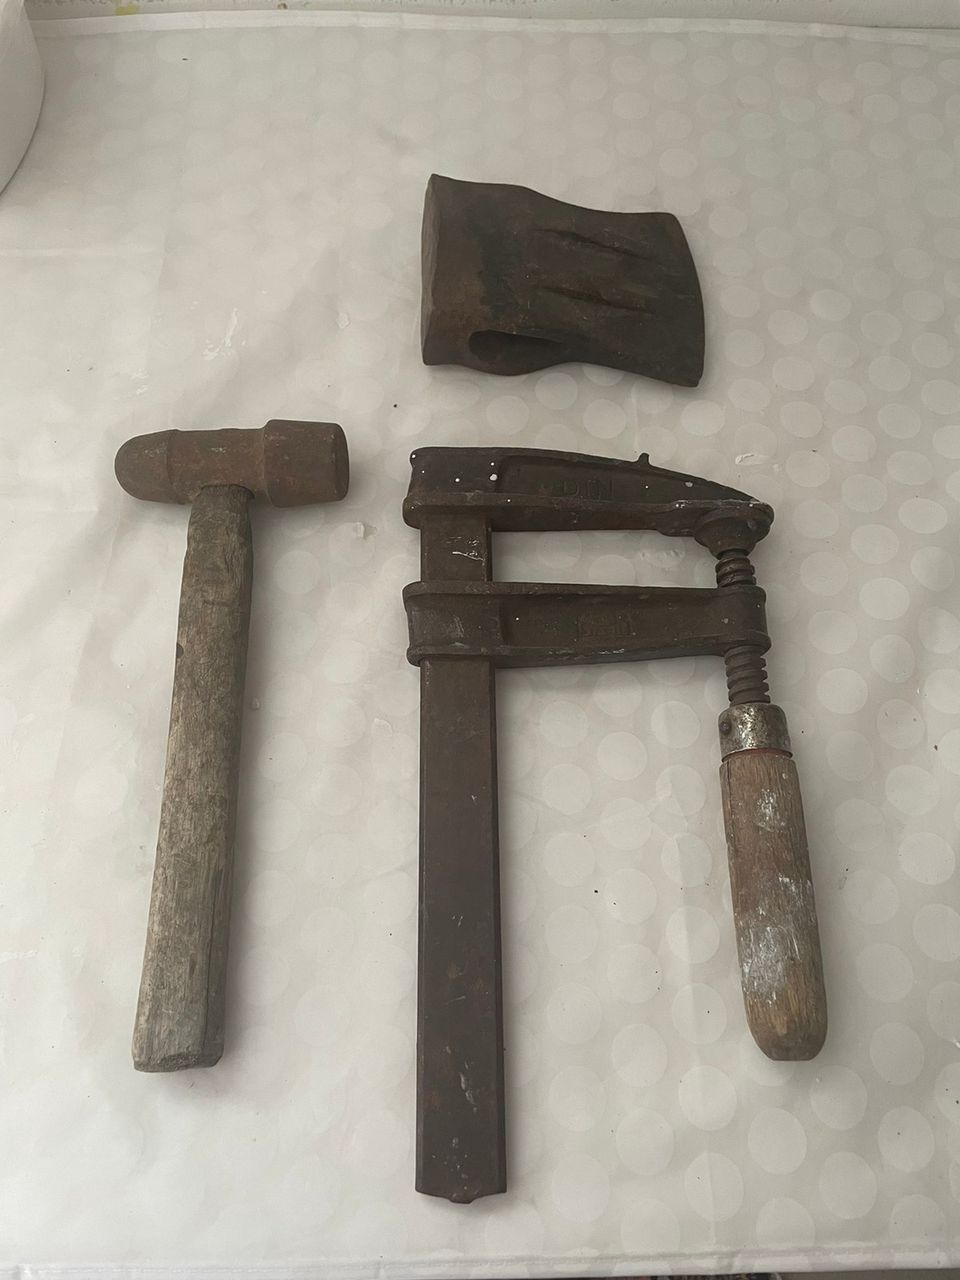 Vanhoja työkaluja